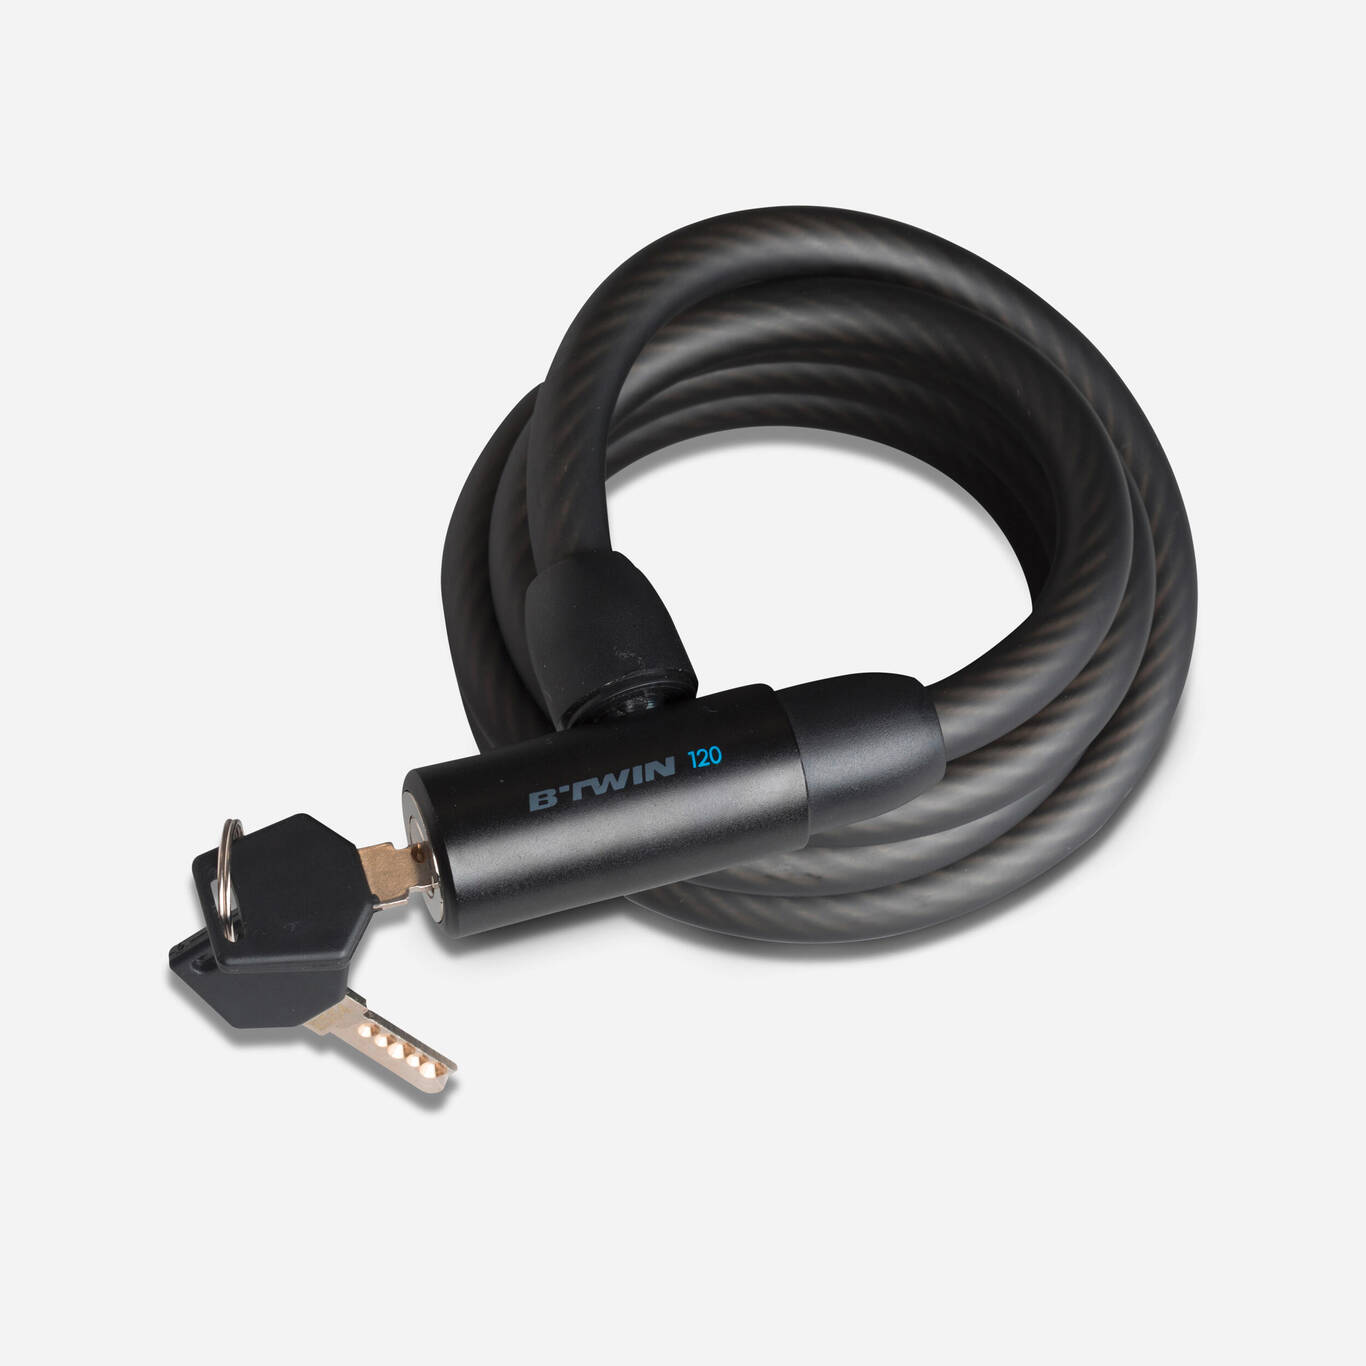 InLine Smart Cable - Rallonge de câble USB - USB (F) 90 ° en angle,  réversible pour USB (M) - USB 2.0 - 20 cm - noir